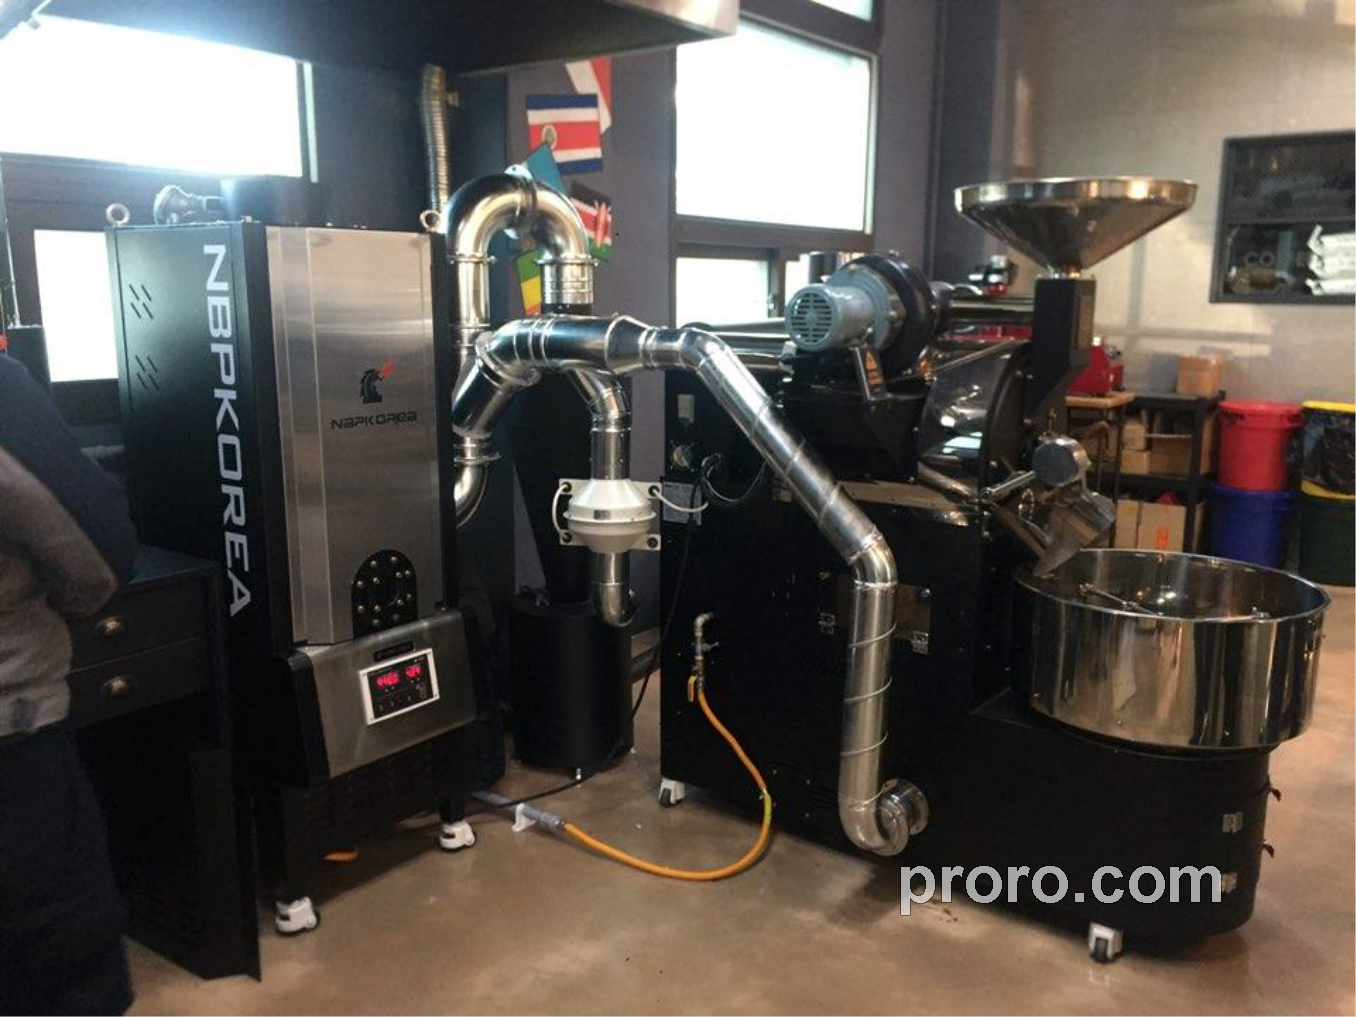 PROASTER 泰焕咖啡烘焙机 除烟除味 后燃机 安装案例 - ALL THAT COFFEE咖啡店